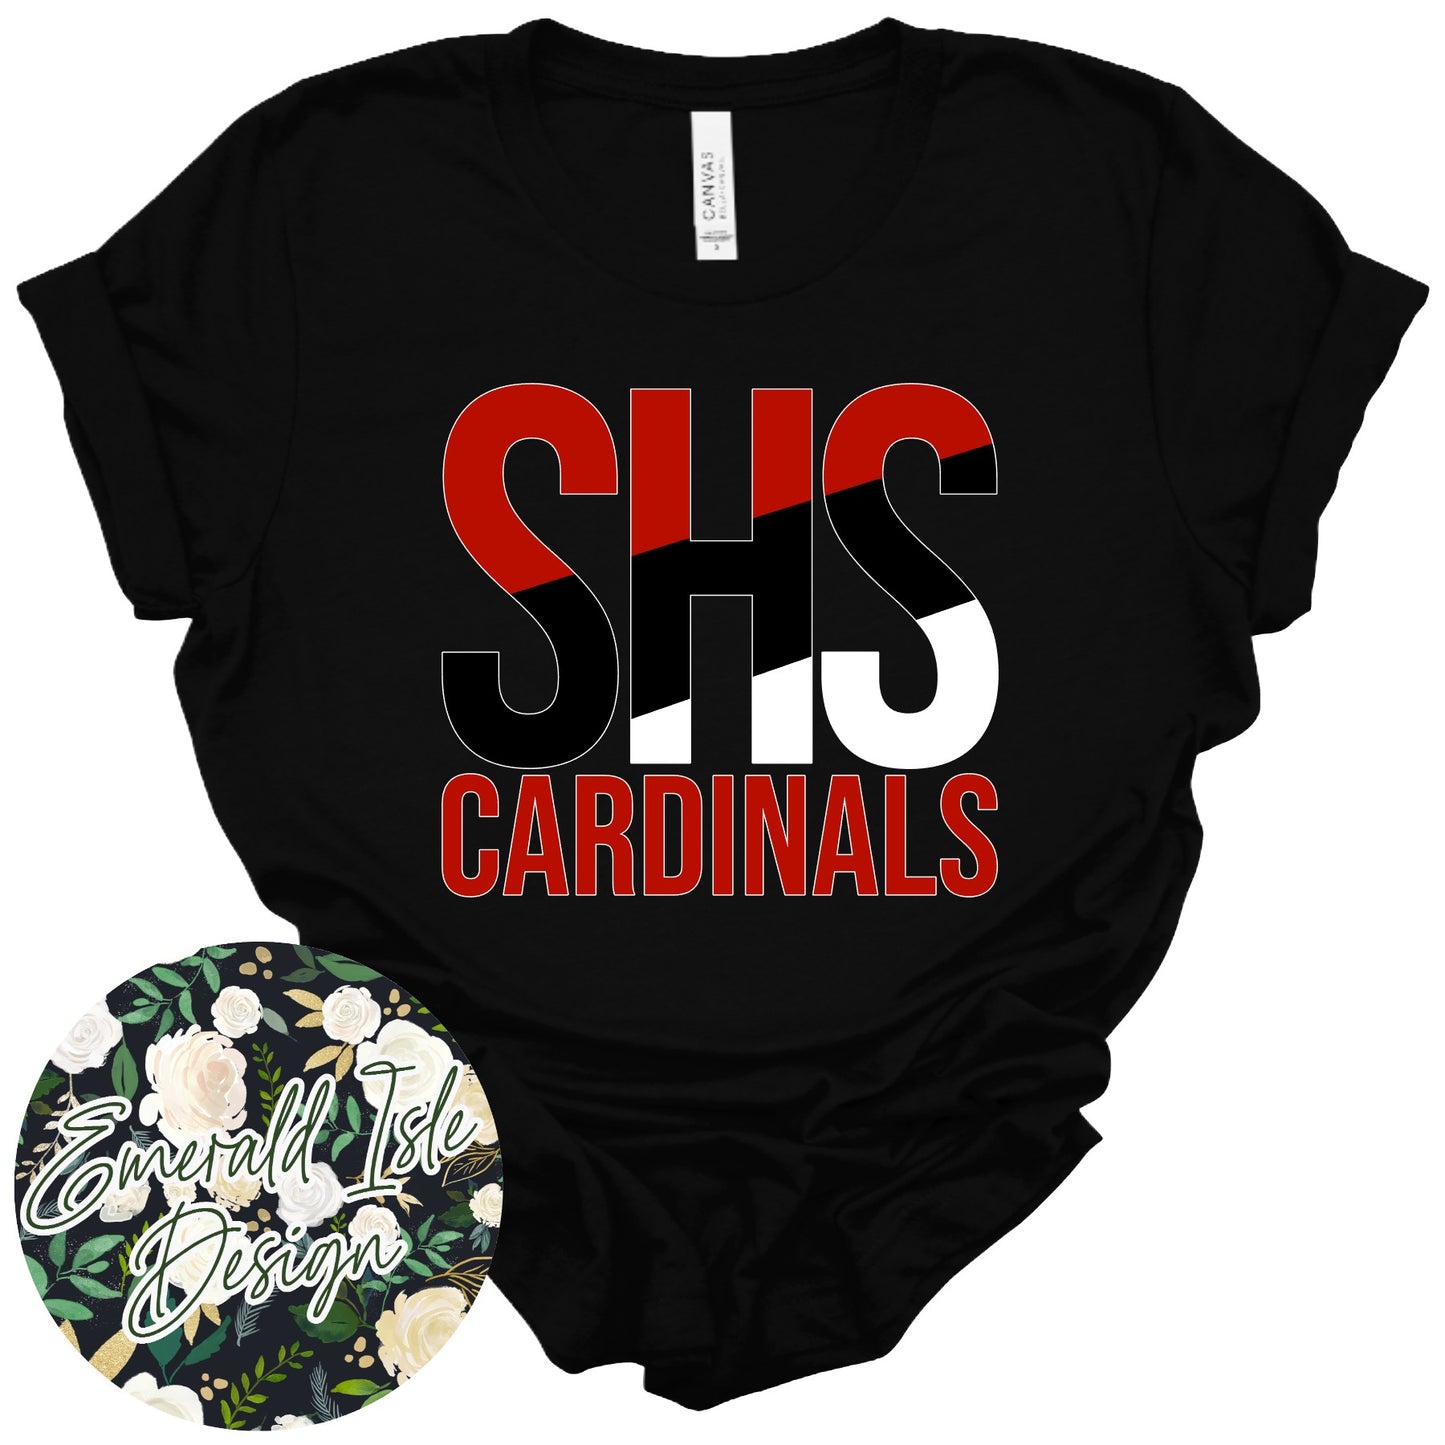 SHS Cardinals Slant Design